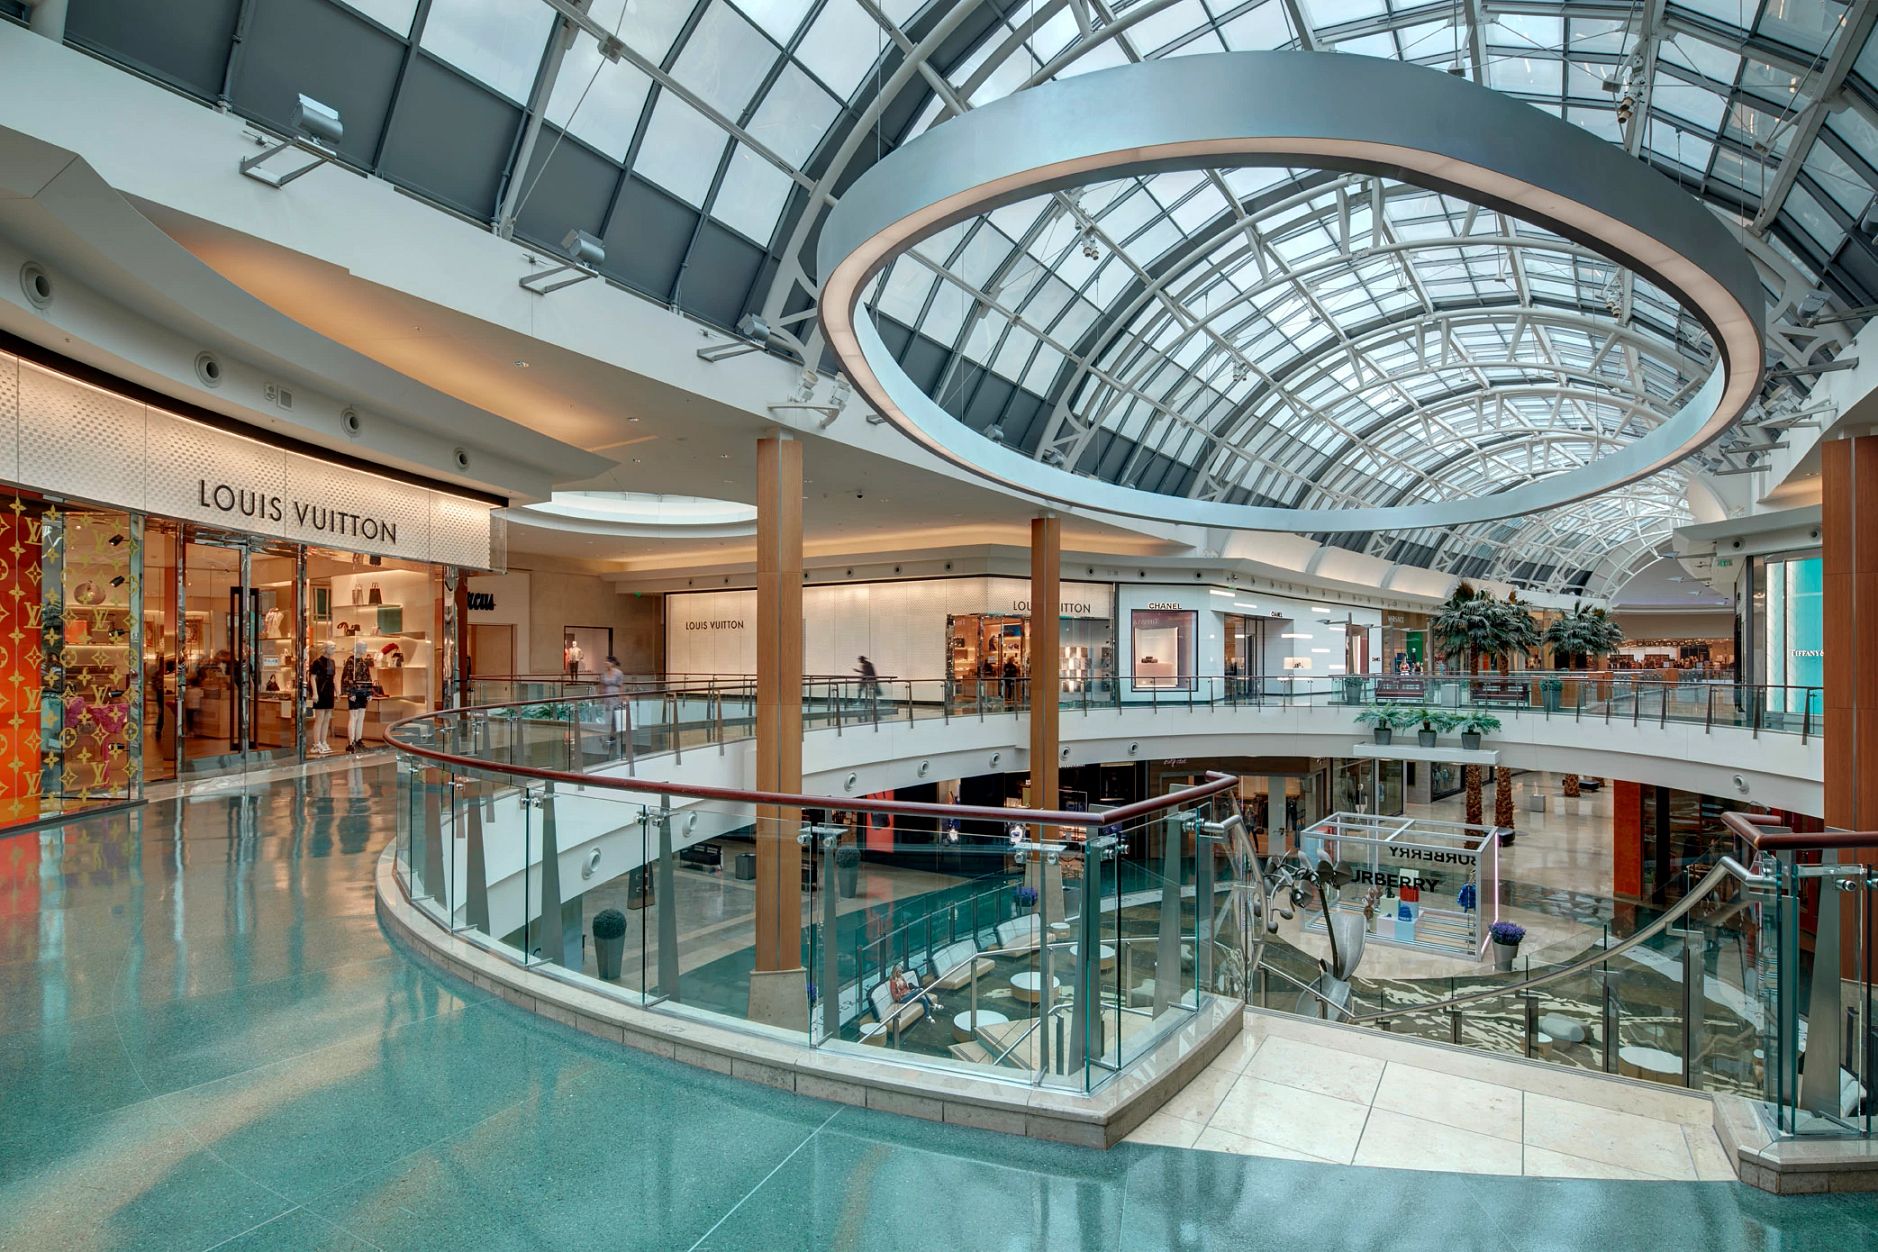 Conheça o maior Shopping Center de Orlando